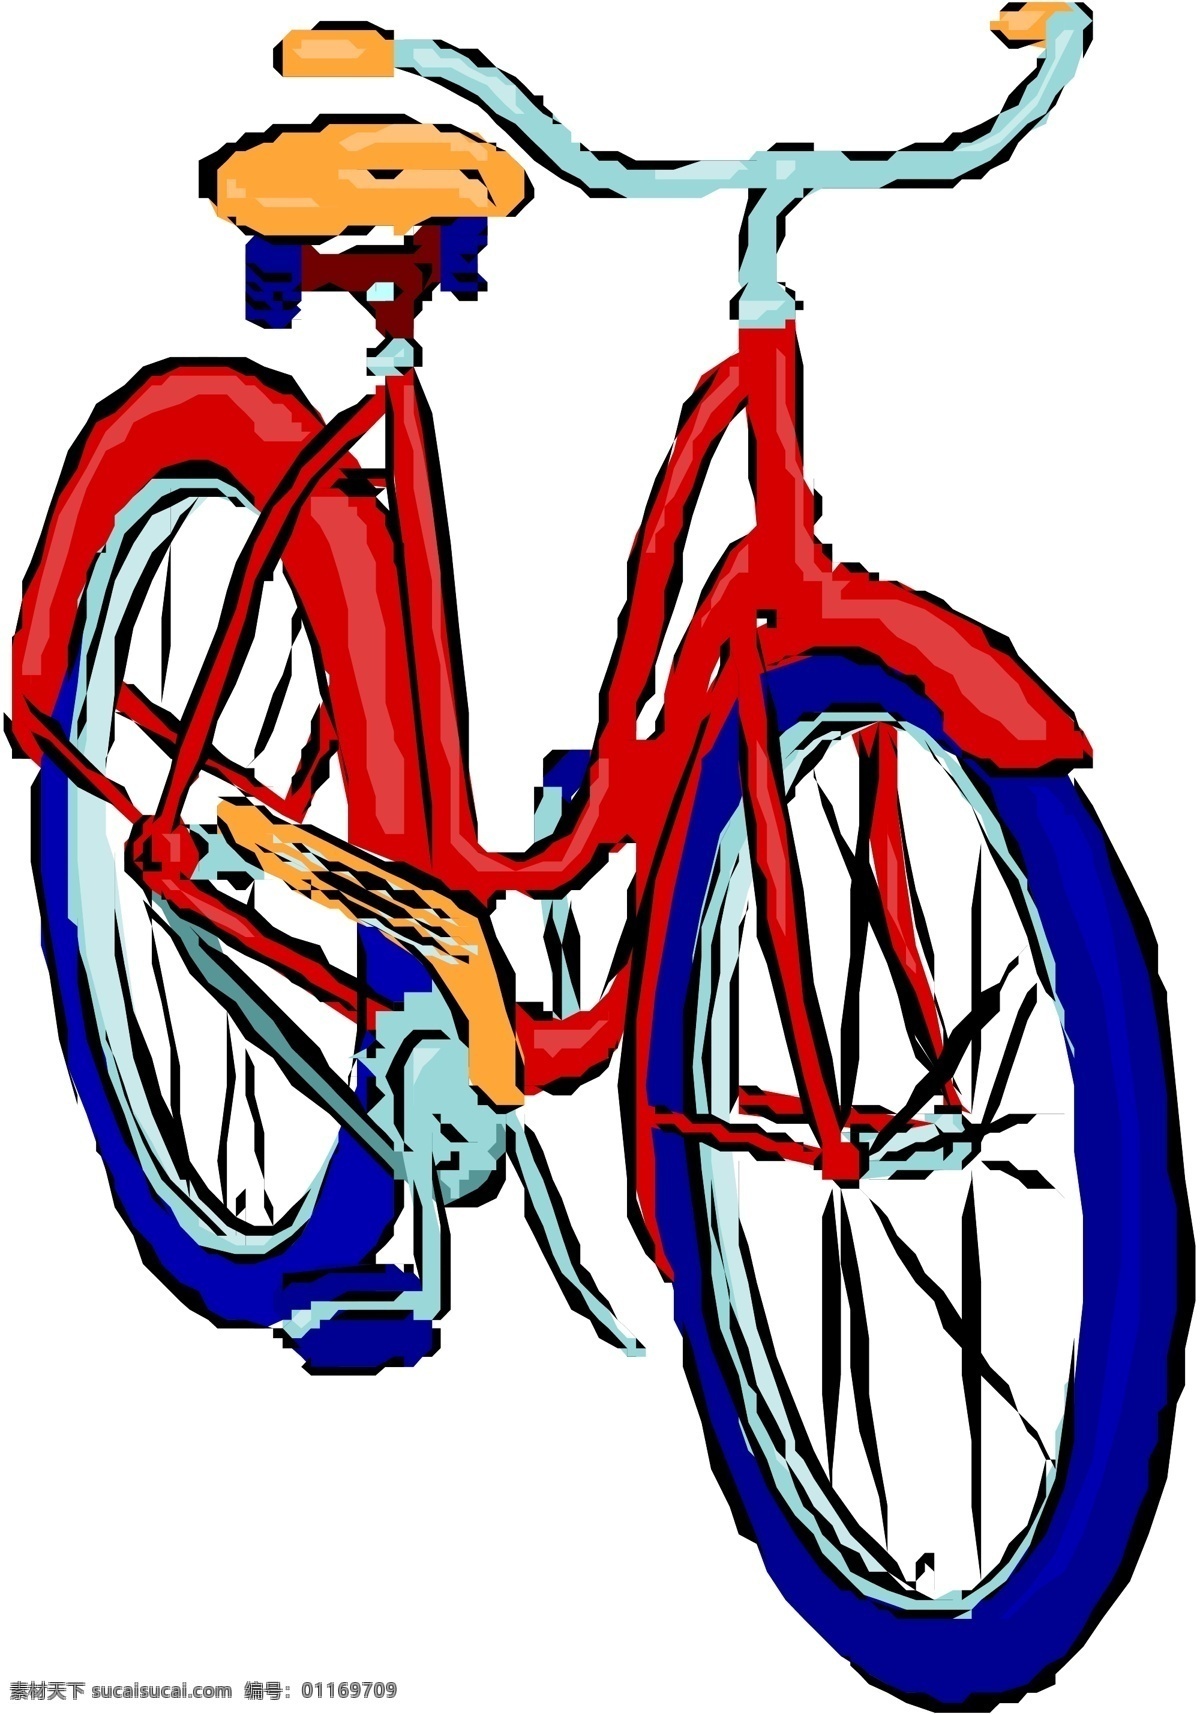 自行车 矢量素材 格式 eps格式 设计素材 自行车篇 交通运输 矢量图库 白色